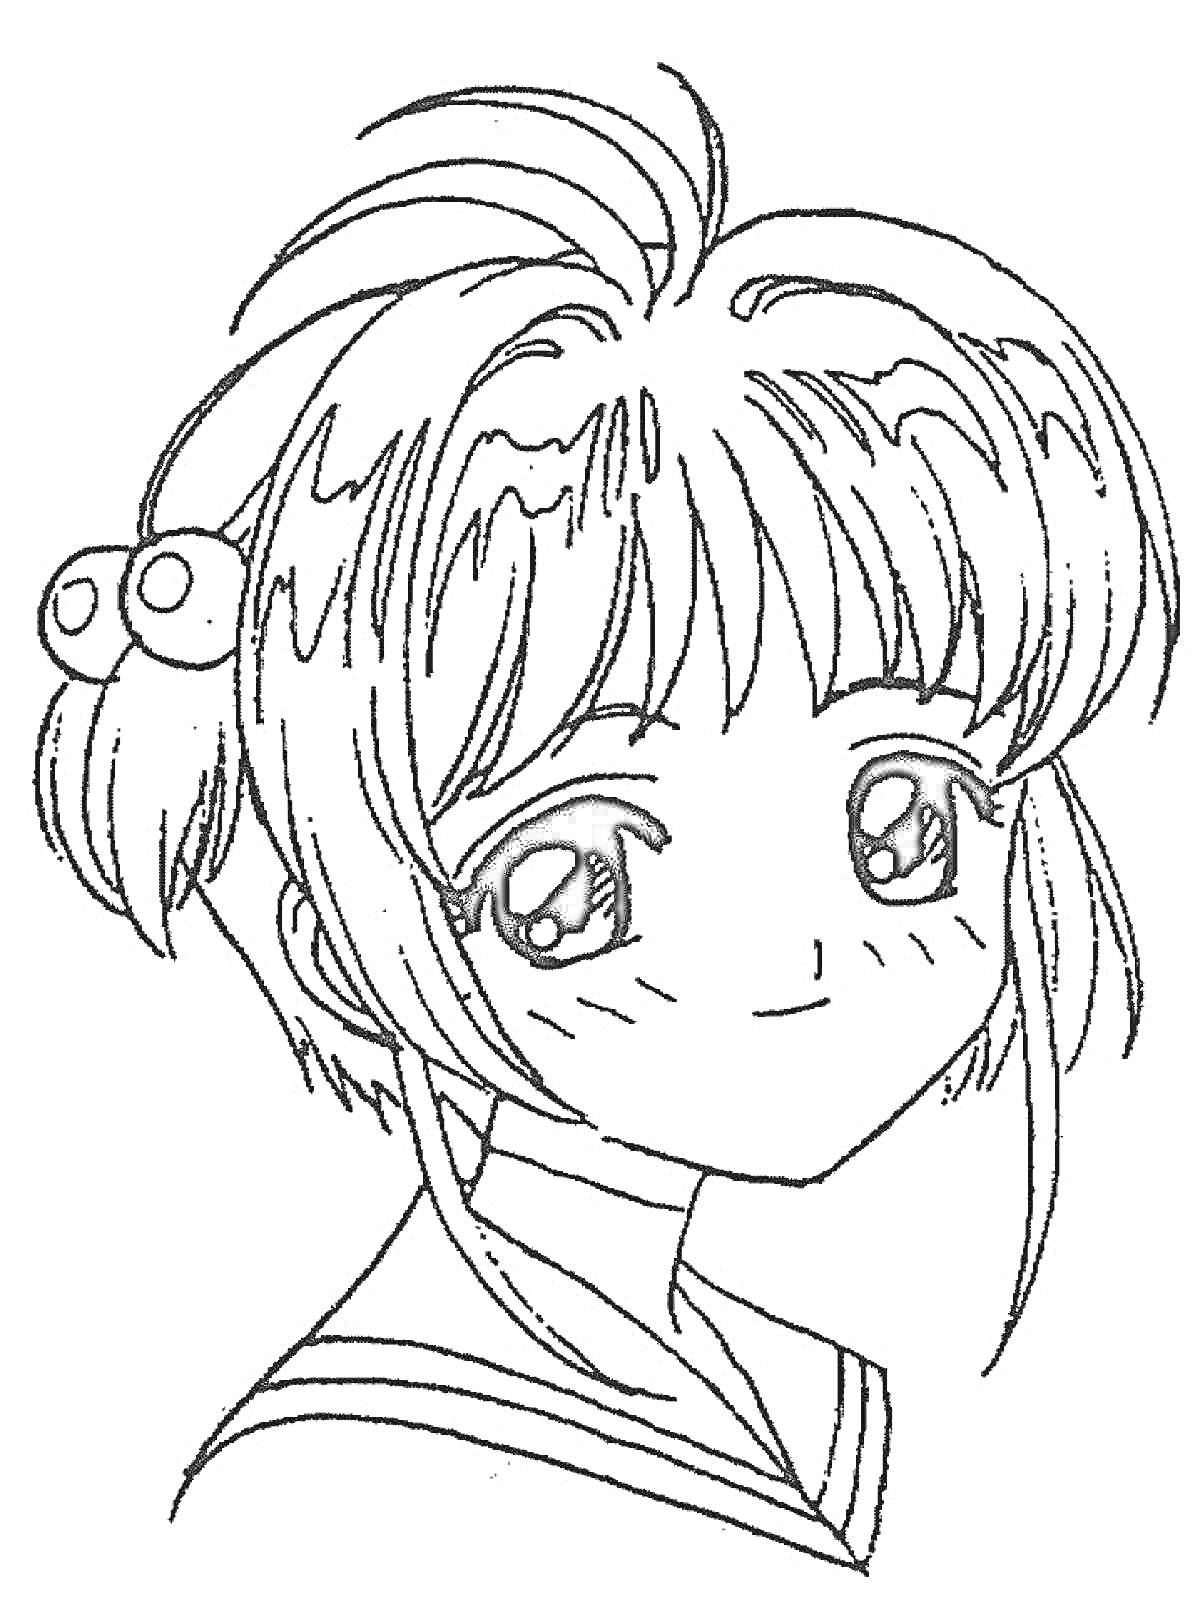 Раскраска Девочка с большими глазами и милой прической в одежде в стиле японской школьной формы